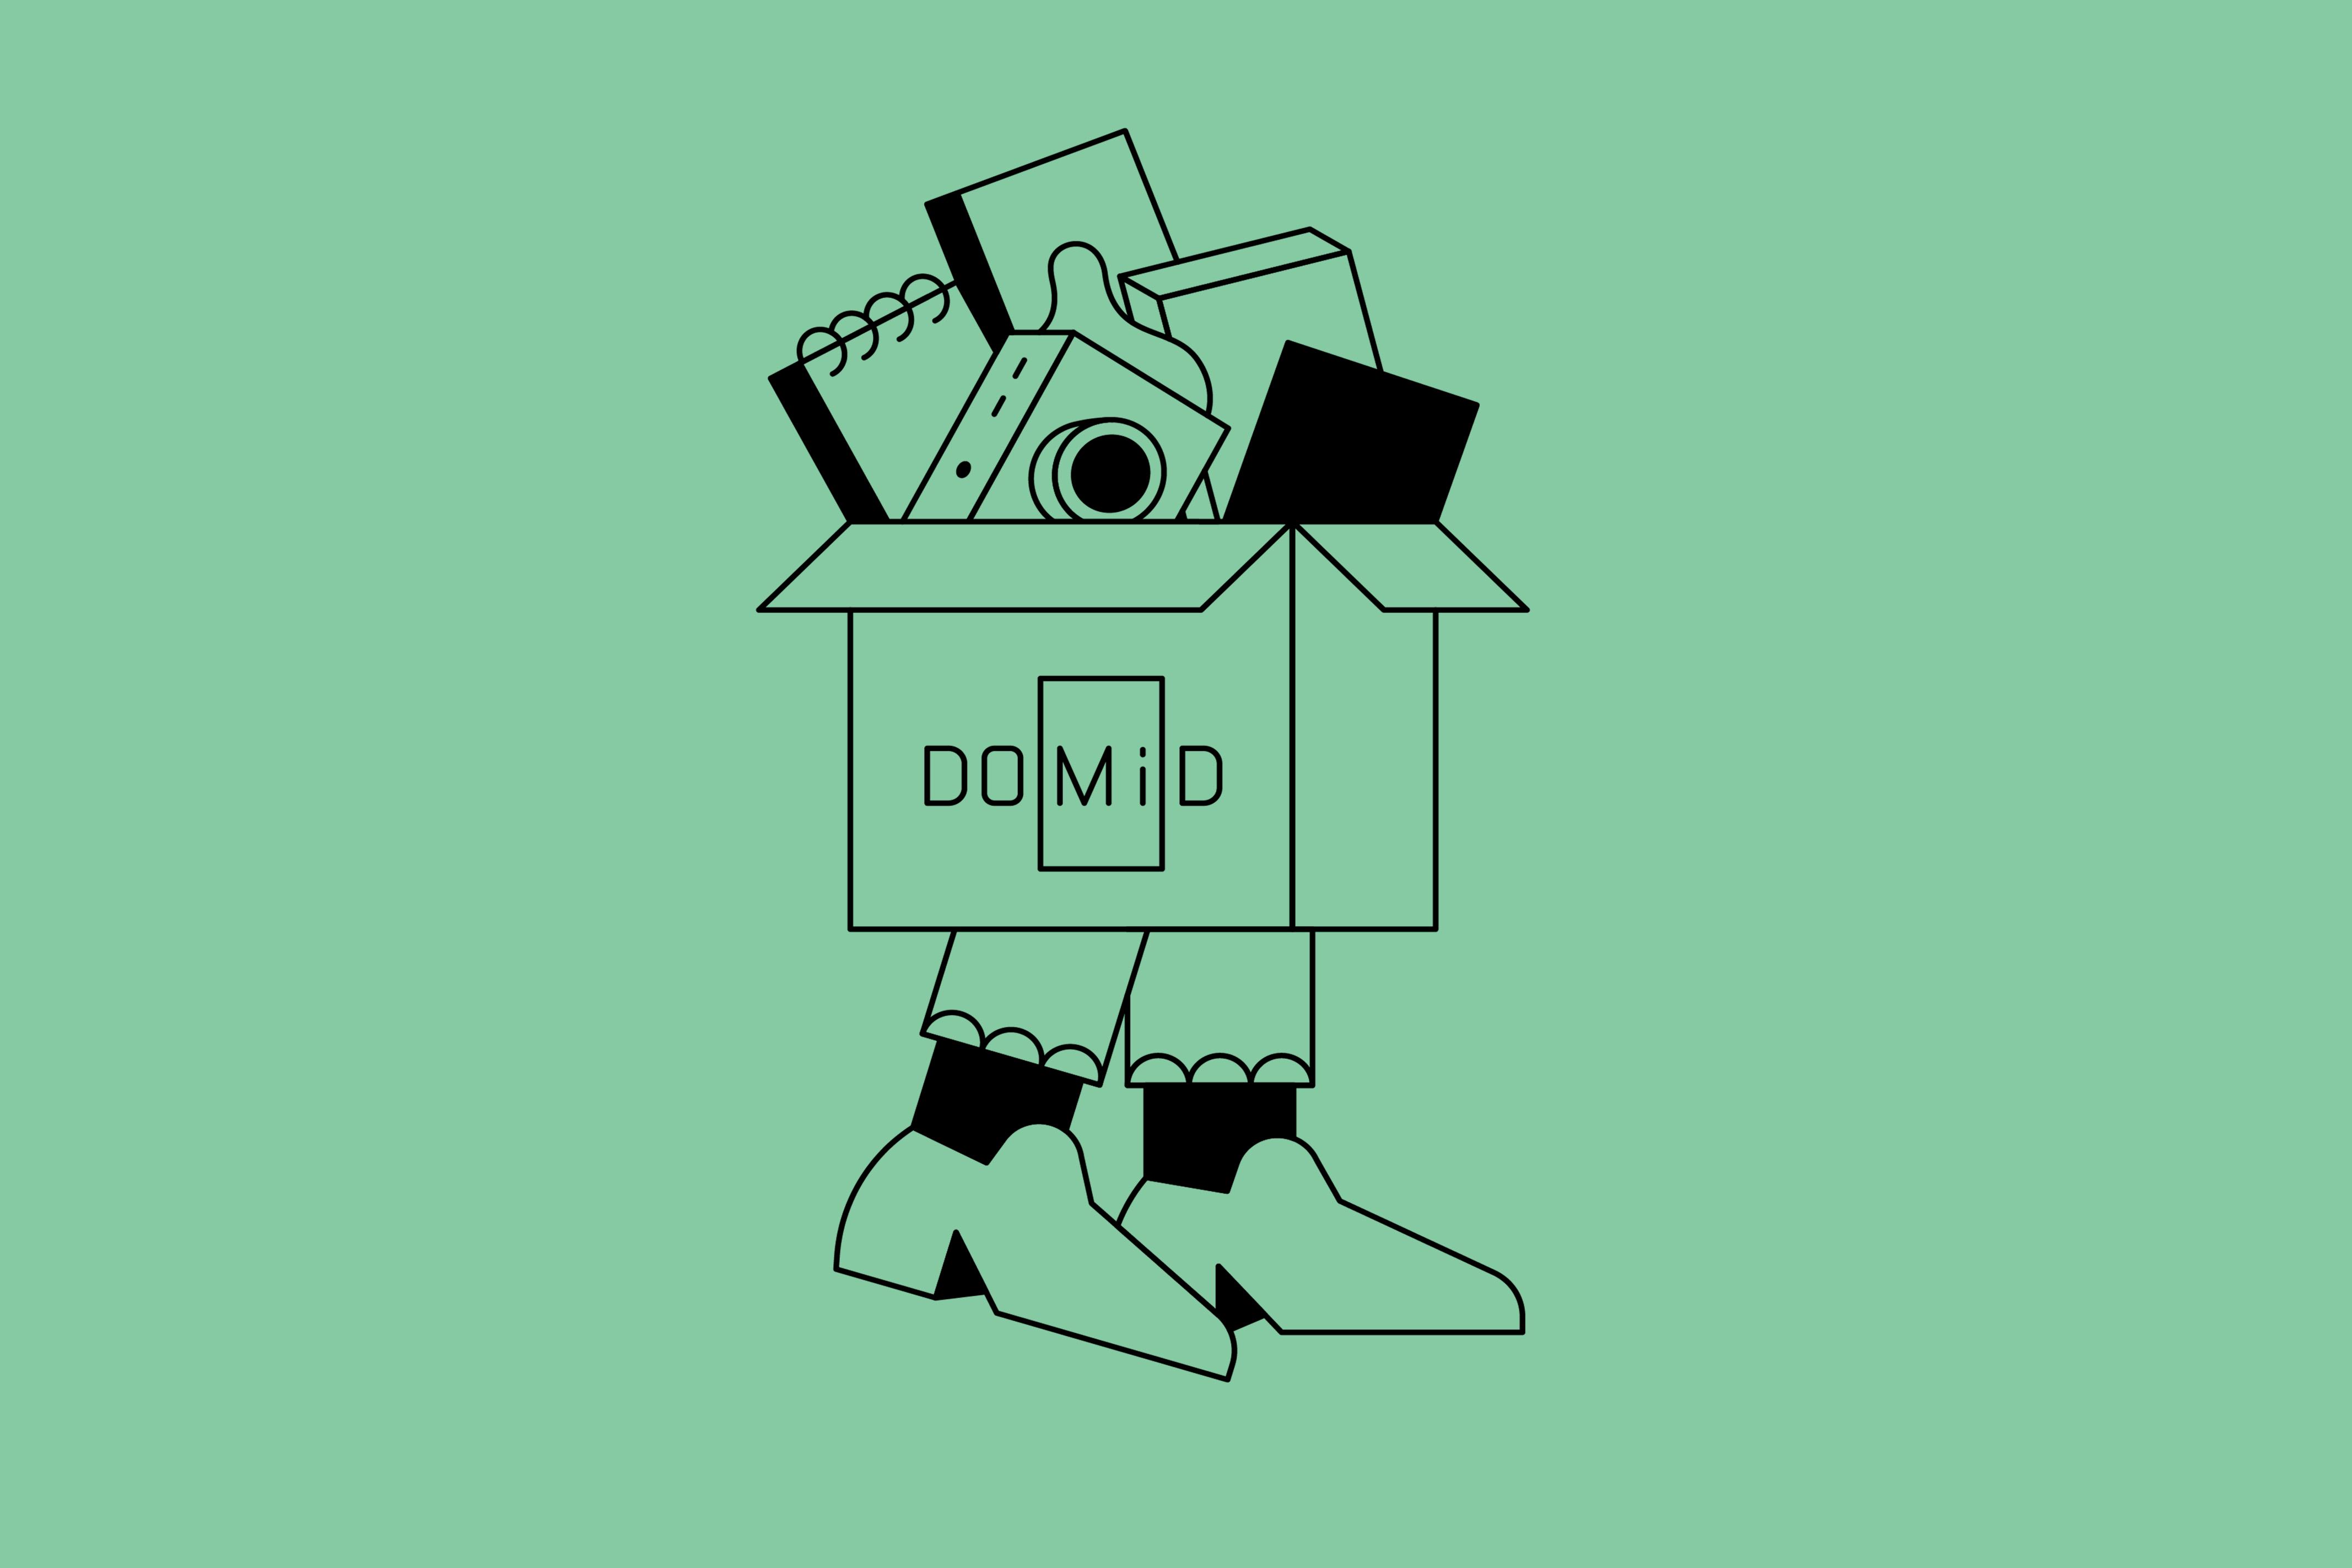 Vor einem mintgrünen Hintergrund ist eine Illustration mit schwarzen Linien zu sehen. Unter einem Karton sind beschuhte Füße abgebildet; im Karton, auf dem DOMiD steht, sind unter anderem eine Kamera sowie ein Notizblock zu sehen.